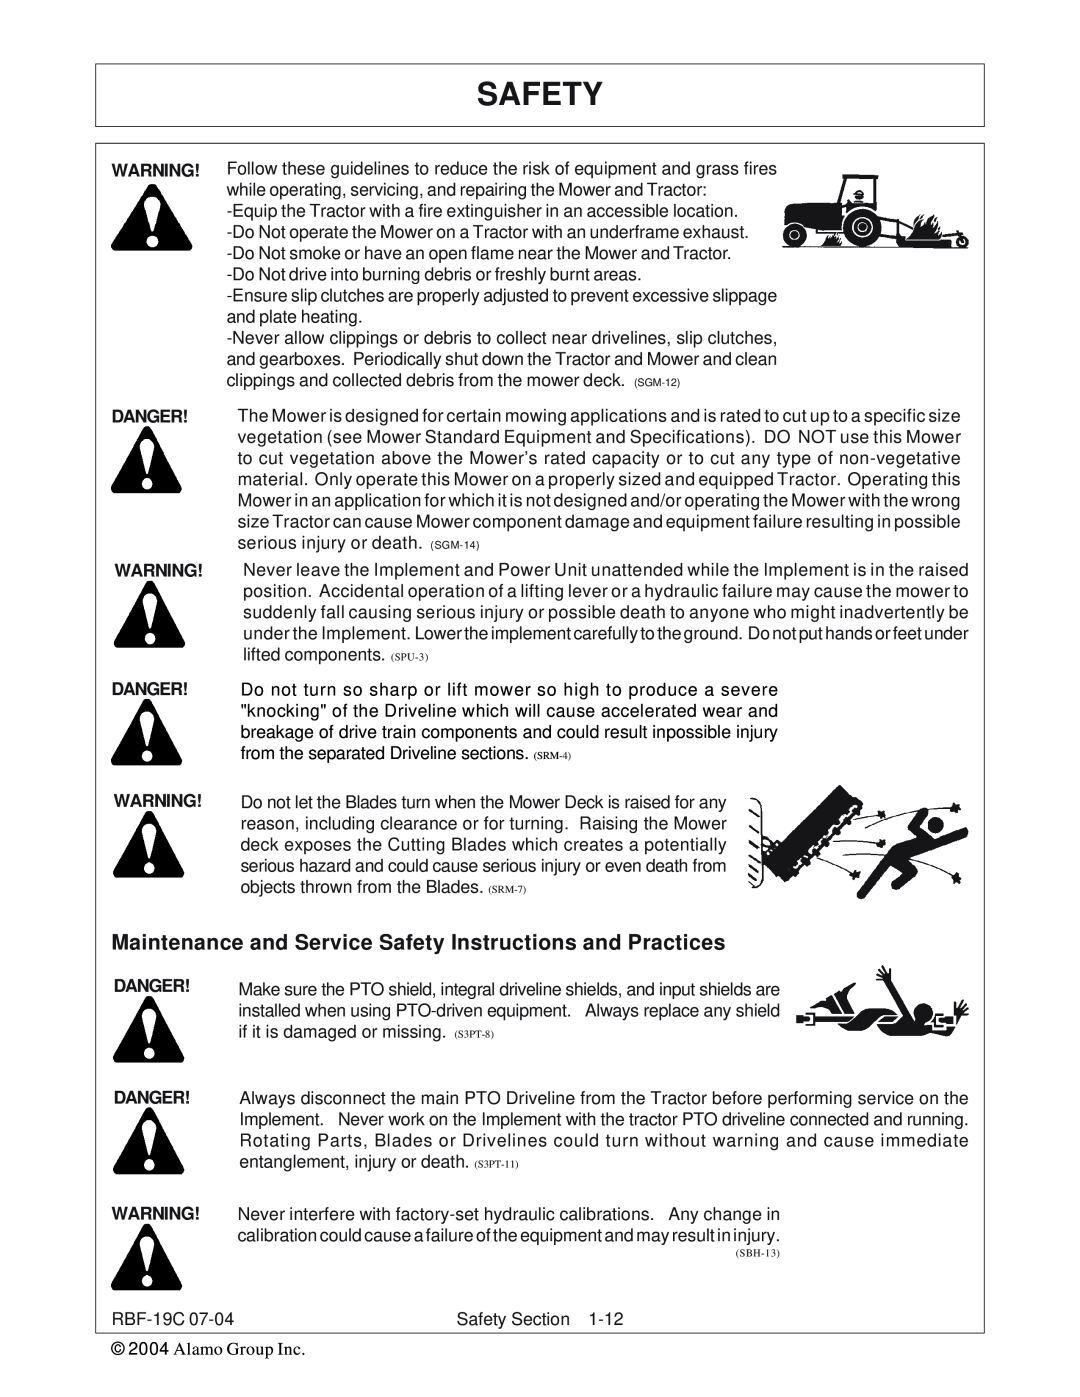 Tiger RBF-19C manual Safety, Danger Danger 